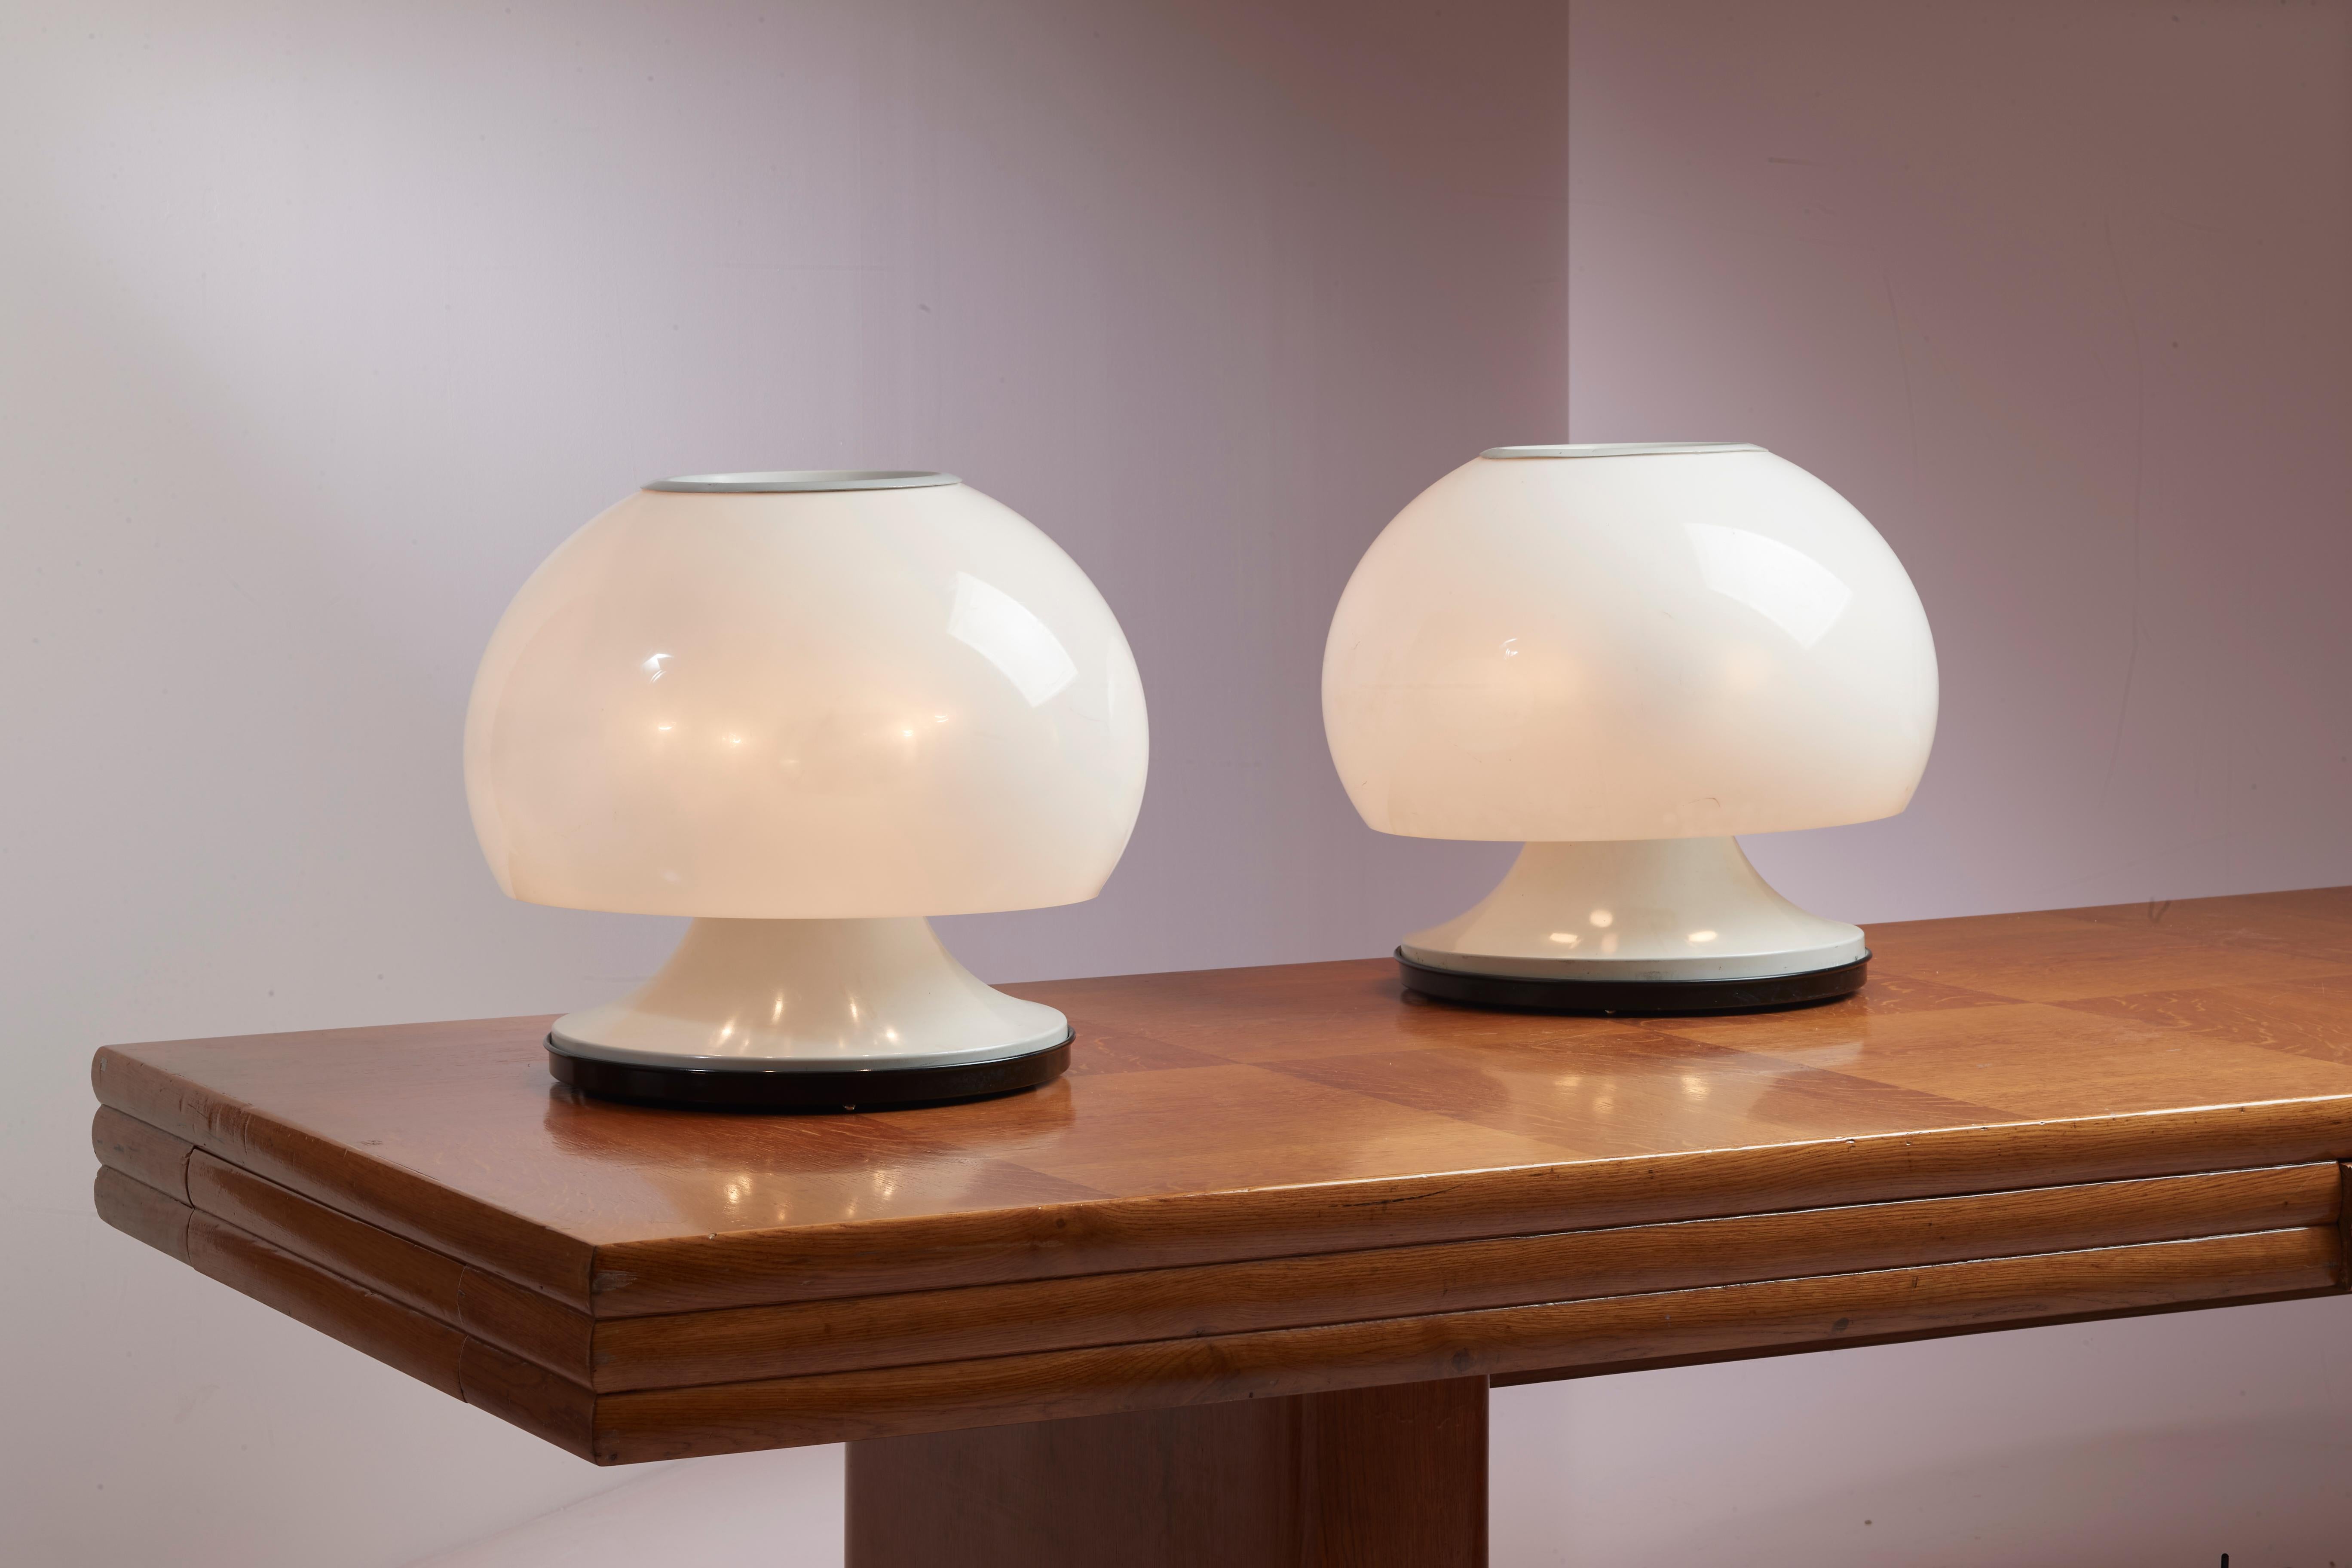 Ein Paar große Tischlampen, Modell 596 aus den 1960er Jahren, von Arteluce kunstvoll aus Plexiglas und Metall gefertigt, mit einem Entwurf von Gino Sarfatti.

Diese ebenso dekorativen wie eindrucksvollen italienischen Lampen zeigen die